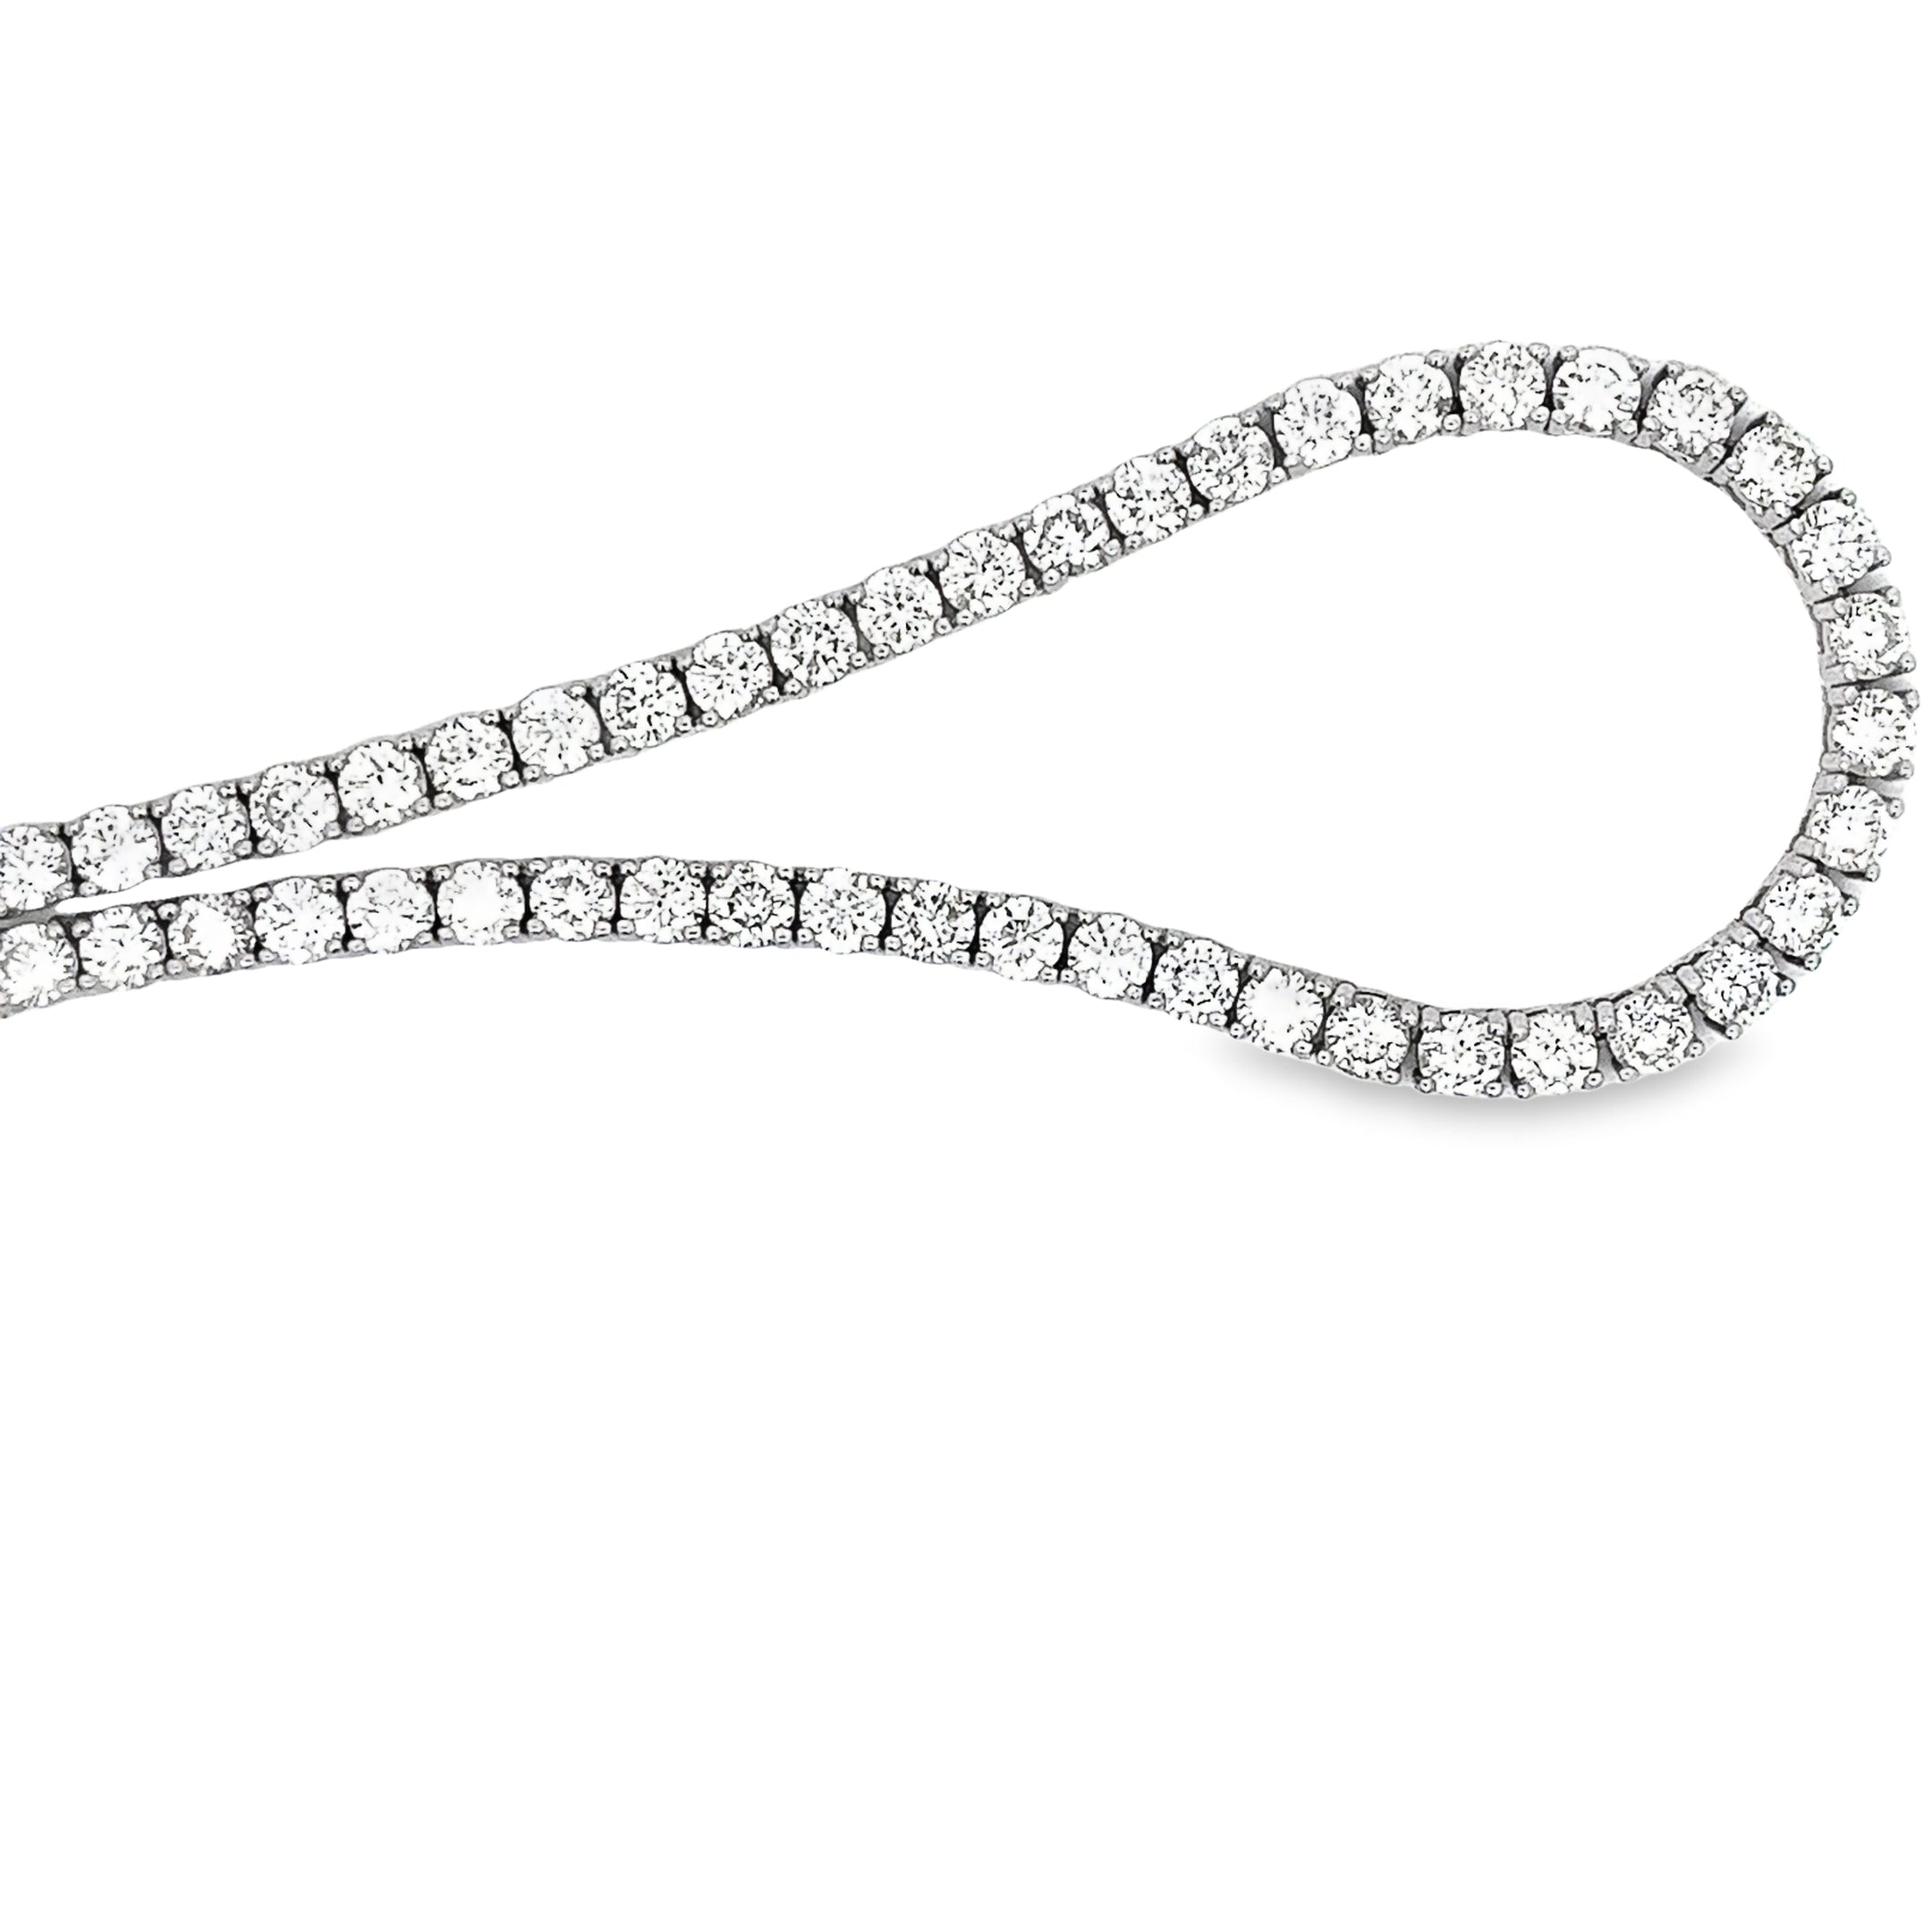 Ladies 14k White Gold Diamond Tennis Necklace